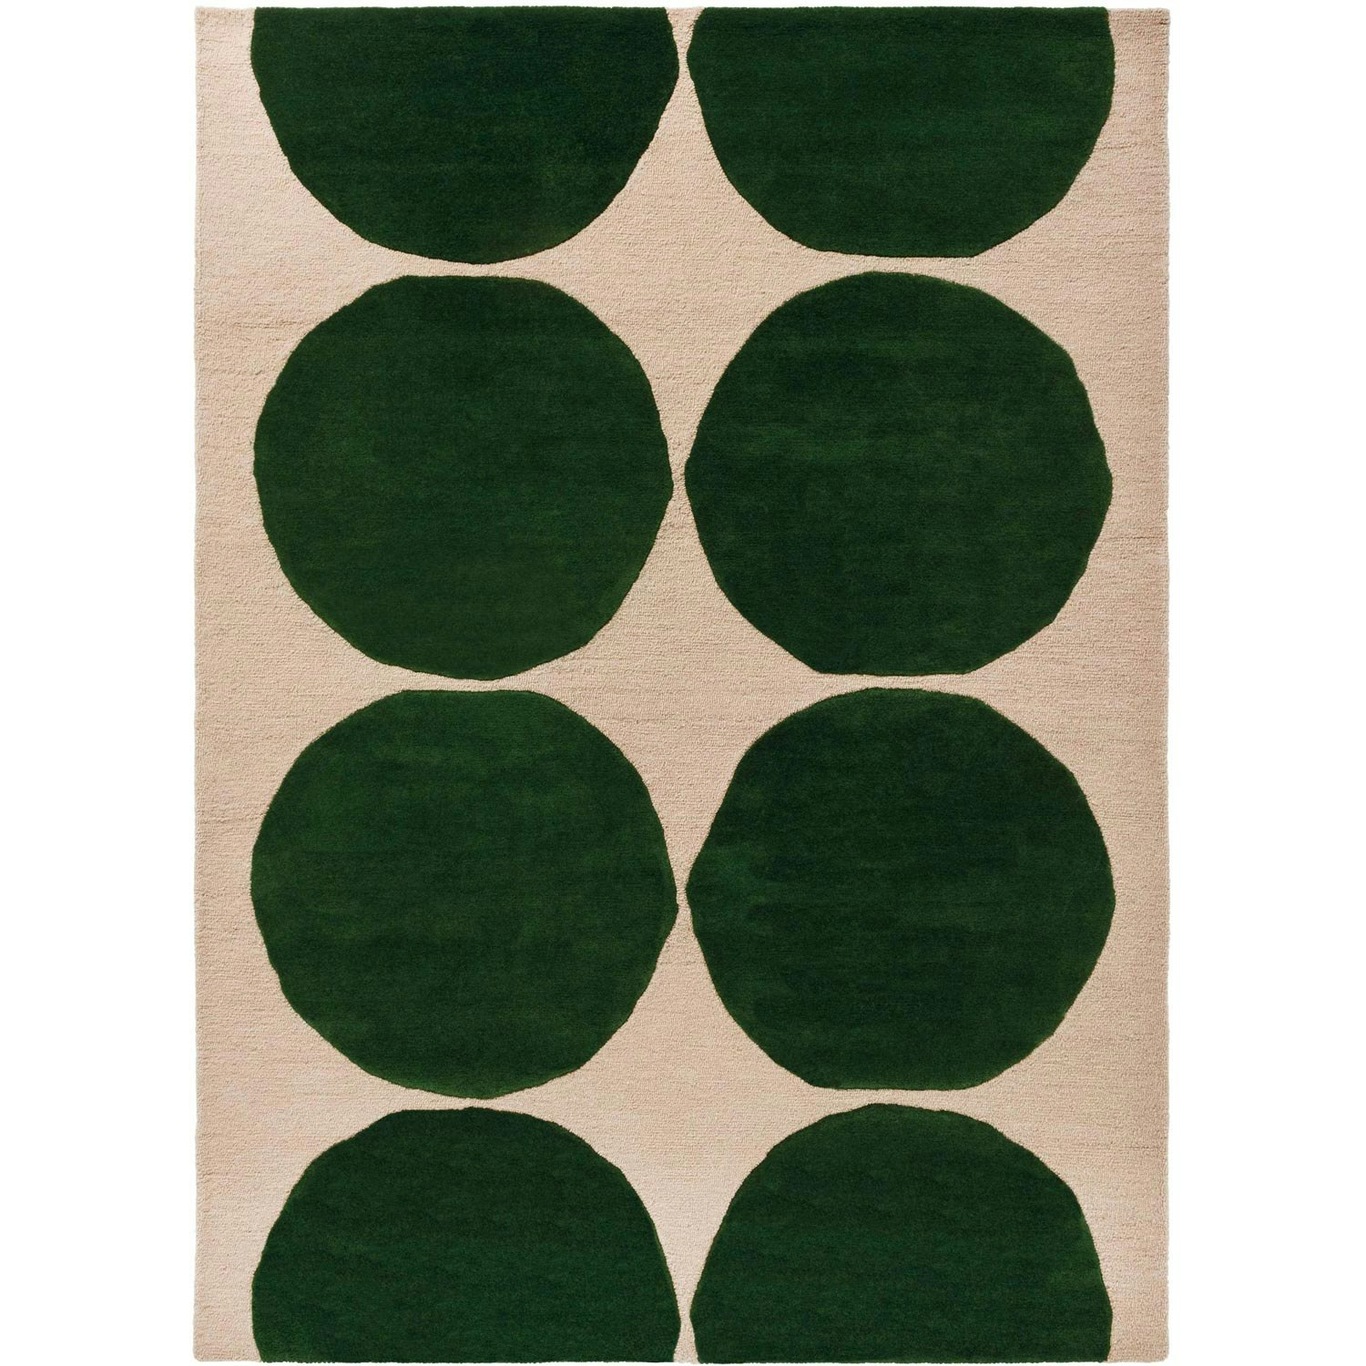 Marimekko Isot Kivet Tæppe 170x240 cm, Grønt